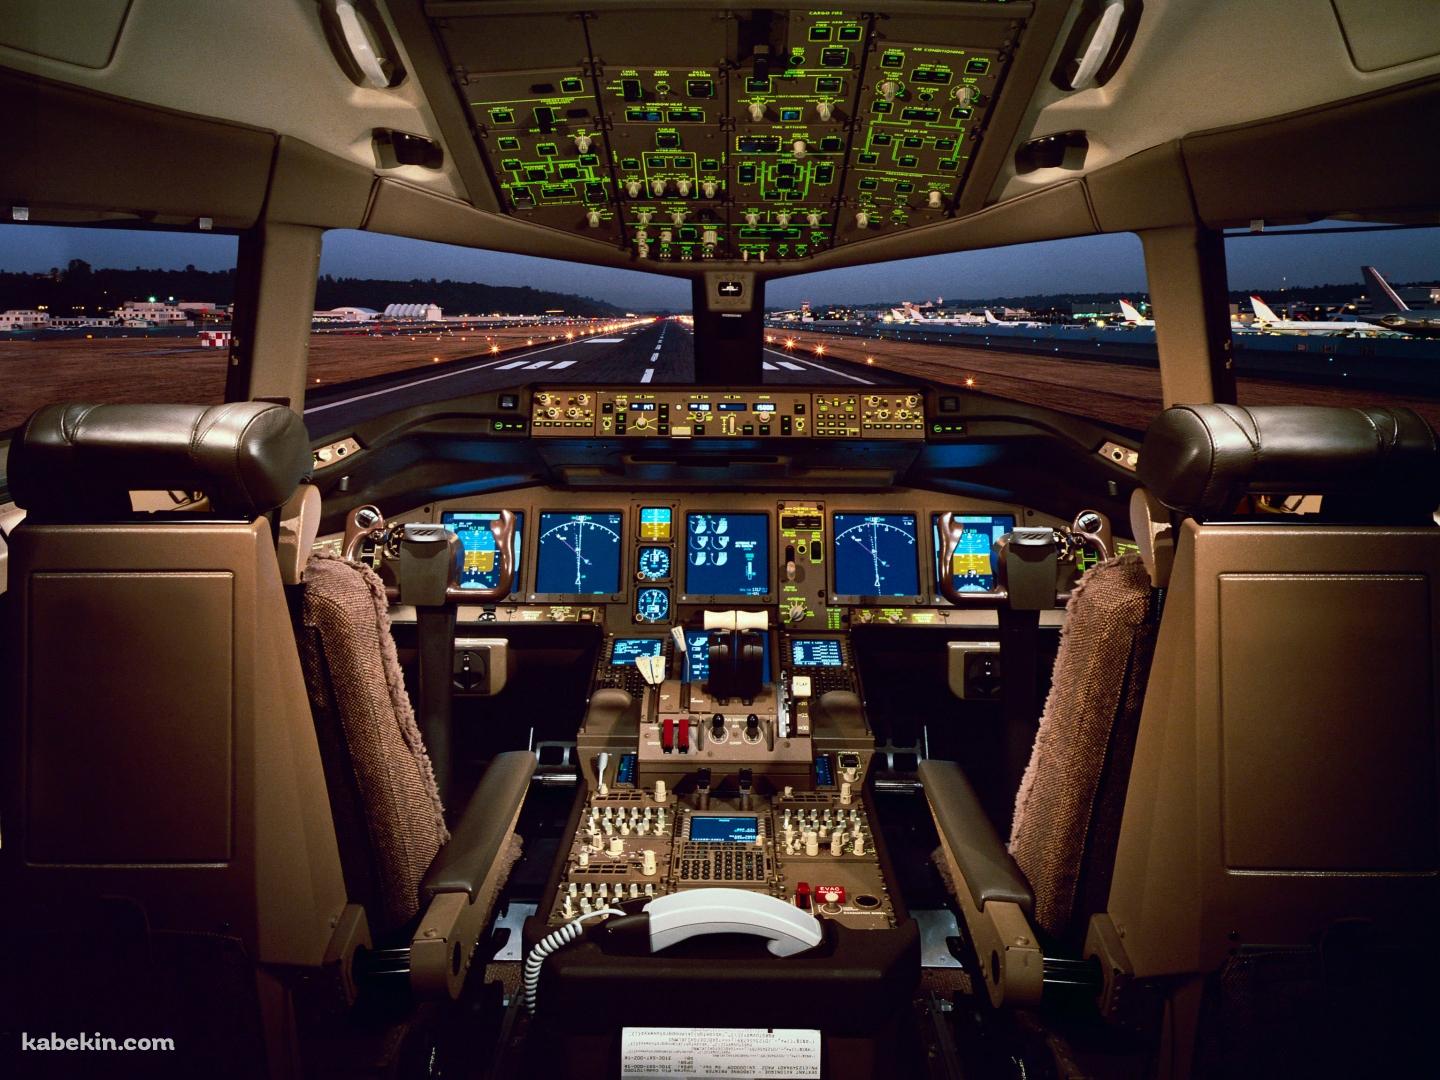 飛行機の操縦席の壁紙(1440px x 1080px) 高画質 PC・デスクトップ用